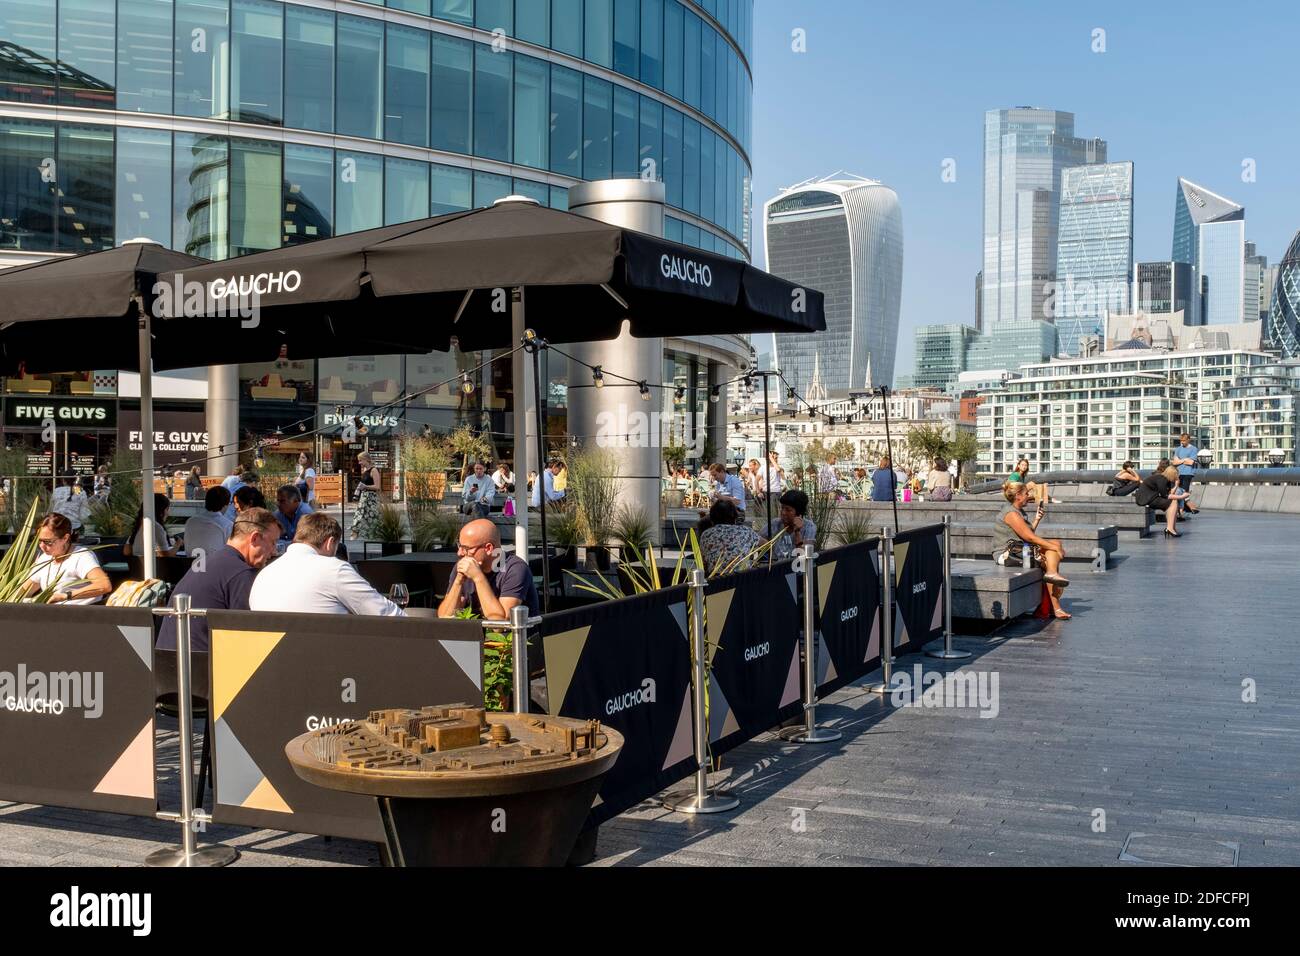 La gente mangia all'aperto al ristorante Gaucho (Tower Bridge) con la City of London nel Backround, London Bridge City Area, Londra, Regno Unito. Foto Stock